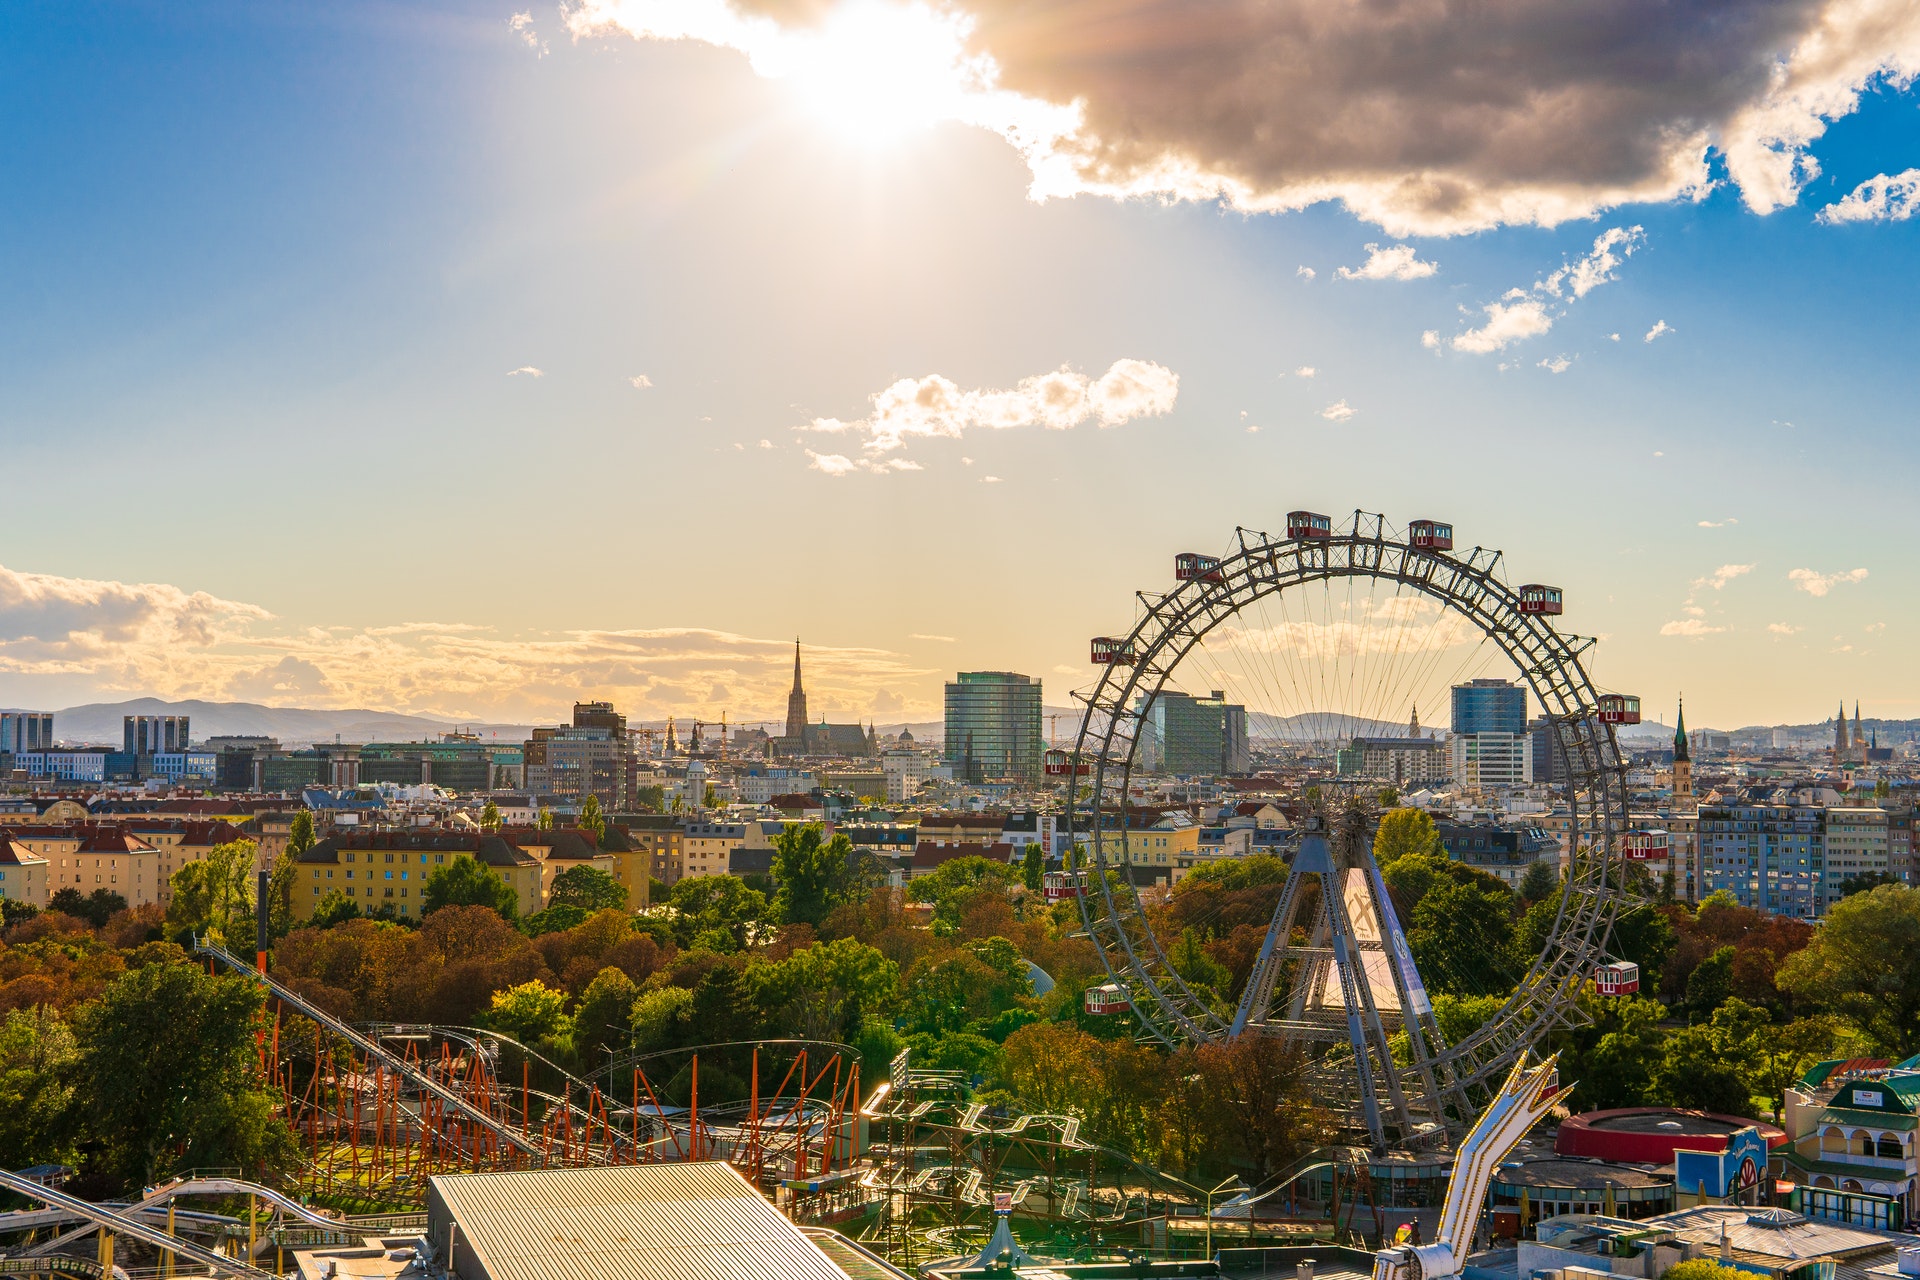 Blick über Wien mit dem Prater-Riesenrad. Bild: Pexels